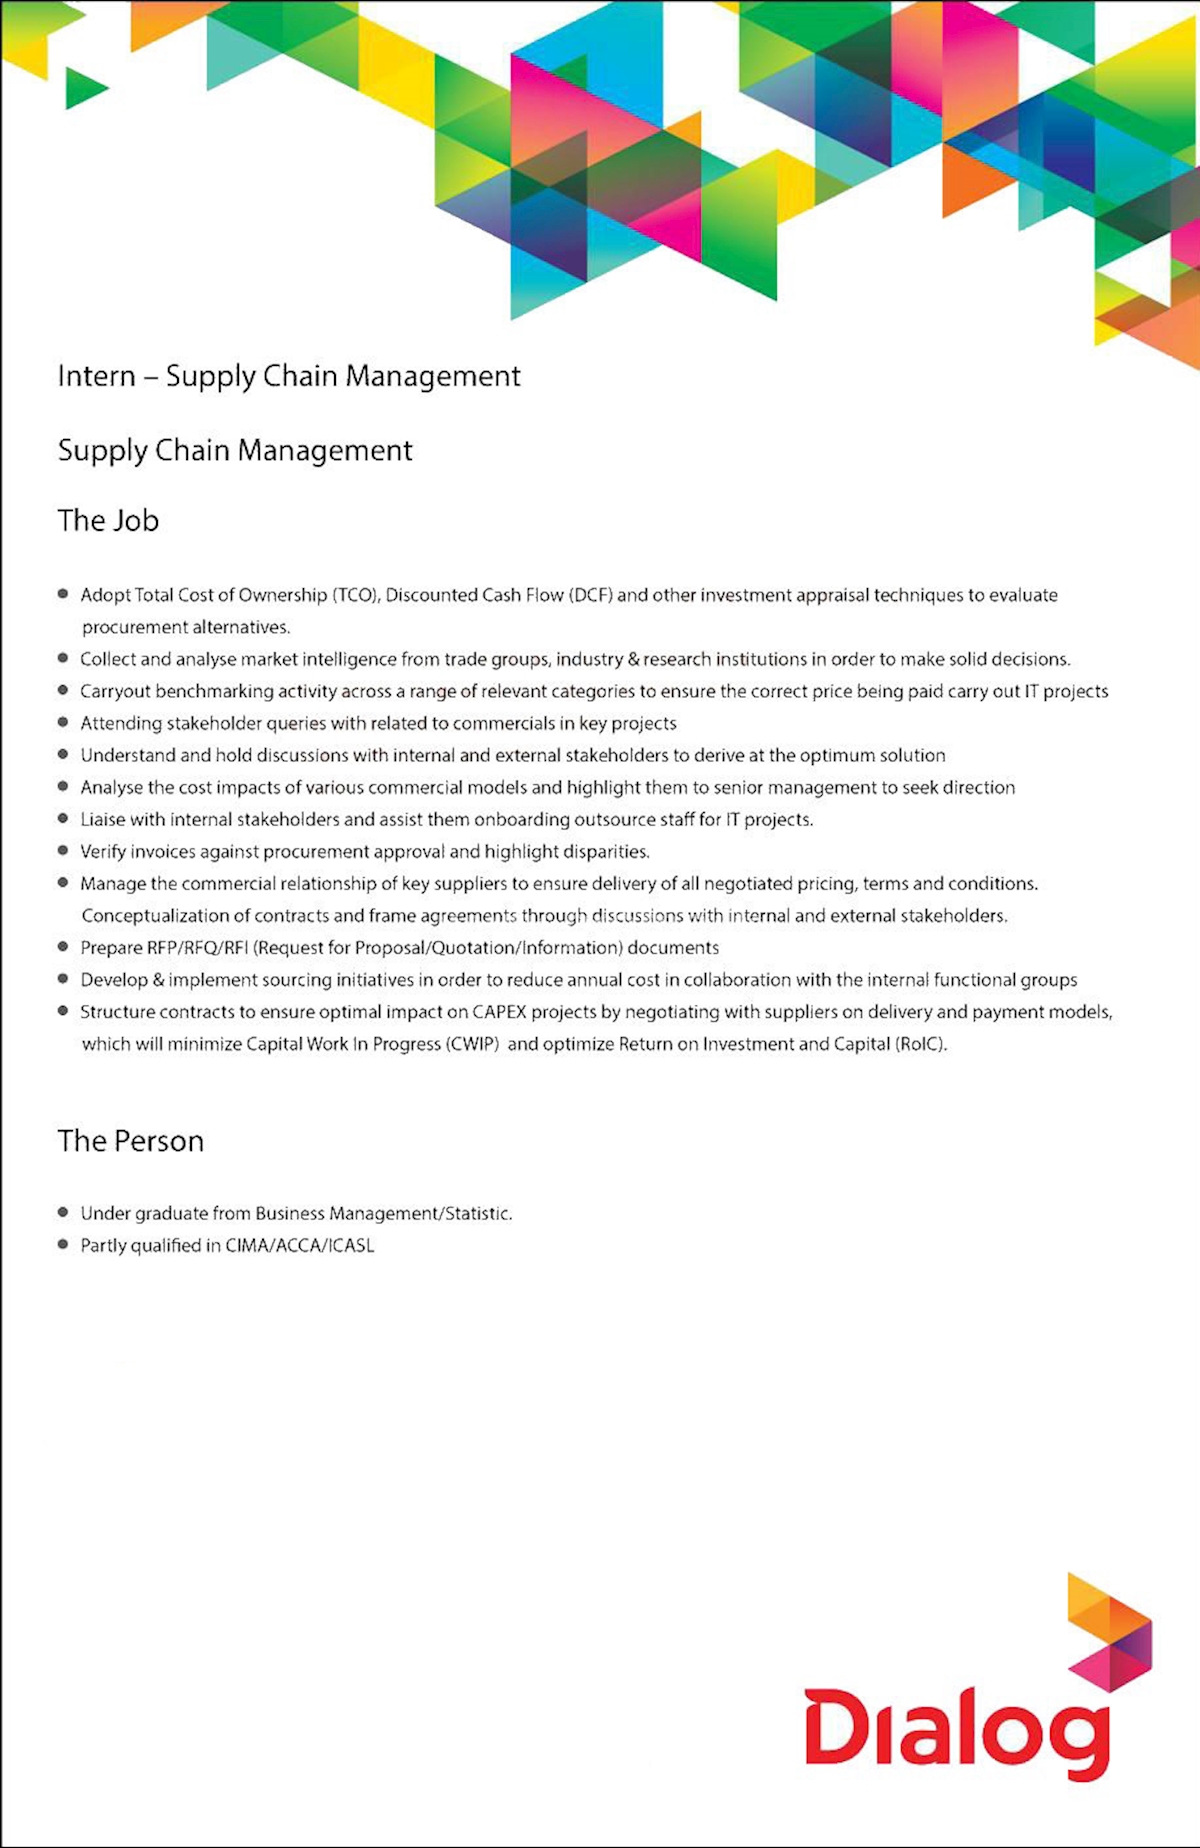 Intern - Supply Chain Management